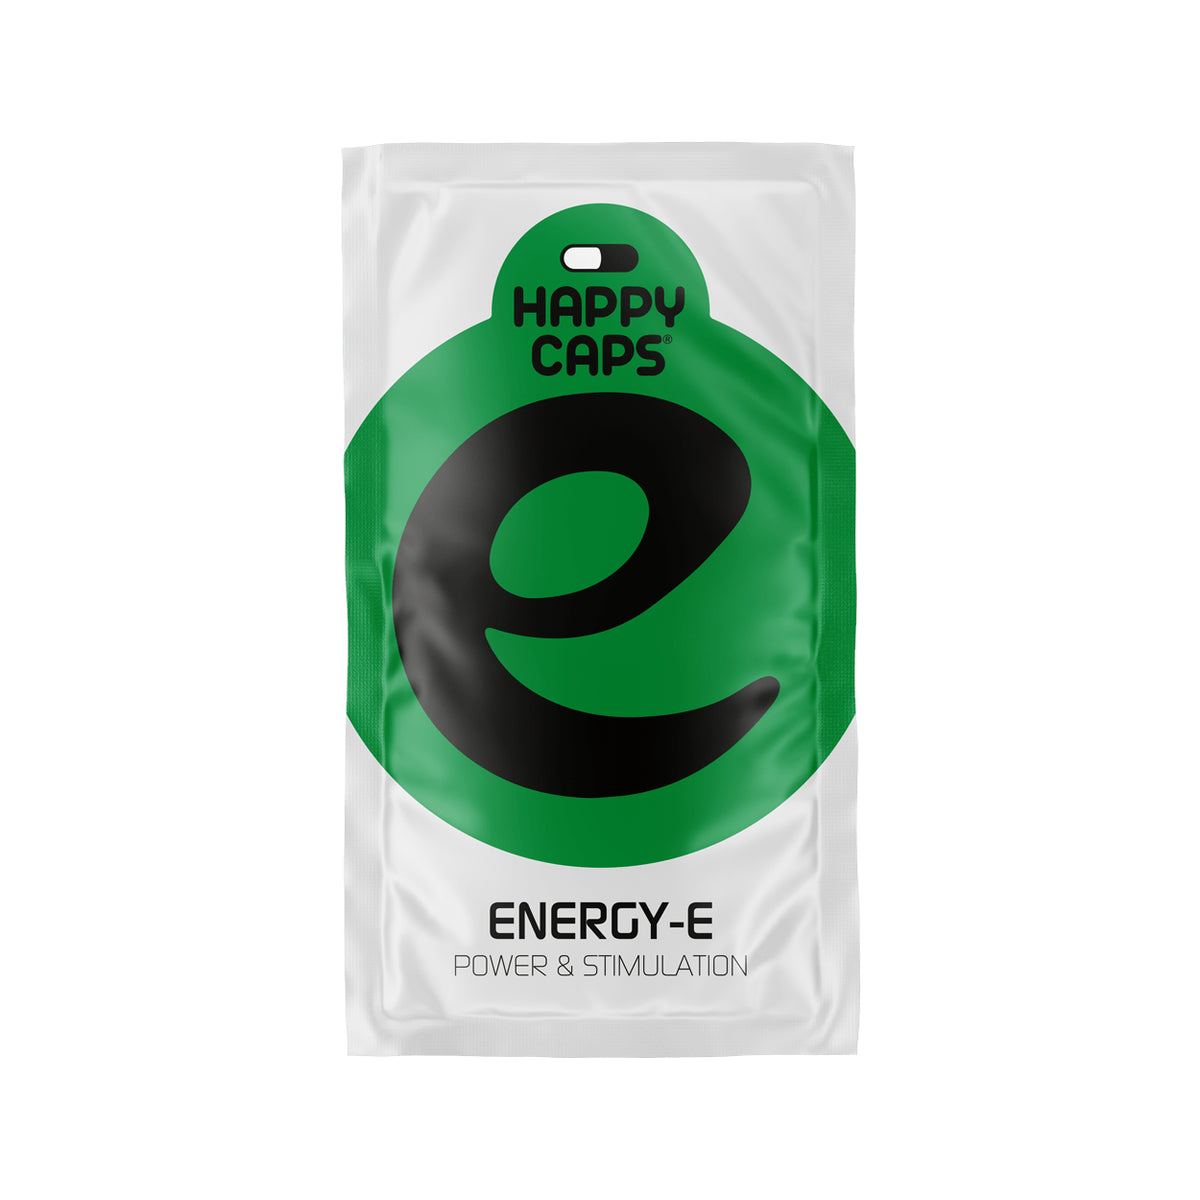 Energy-E (Happy Caps) 4 veg caps